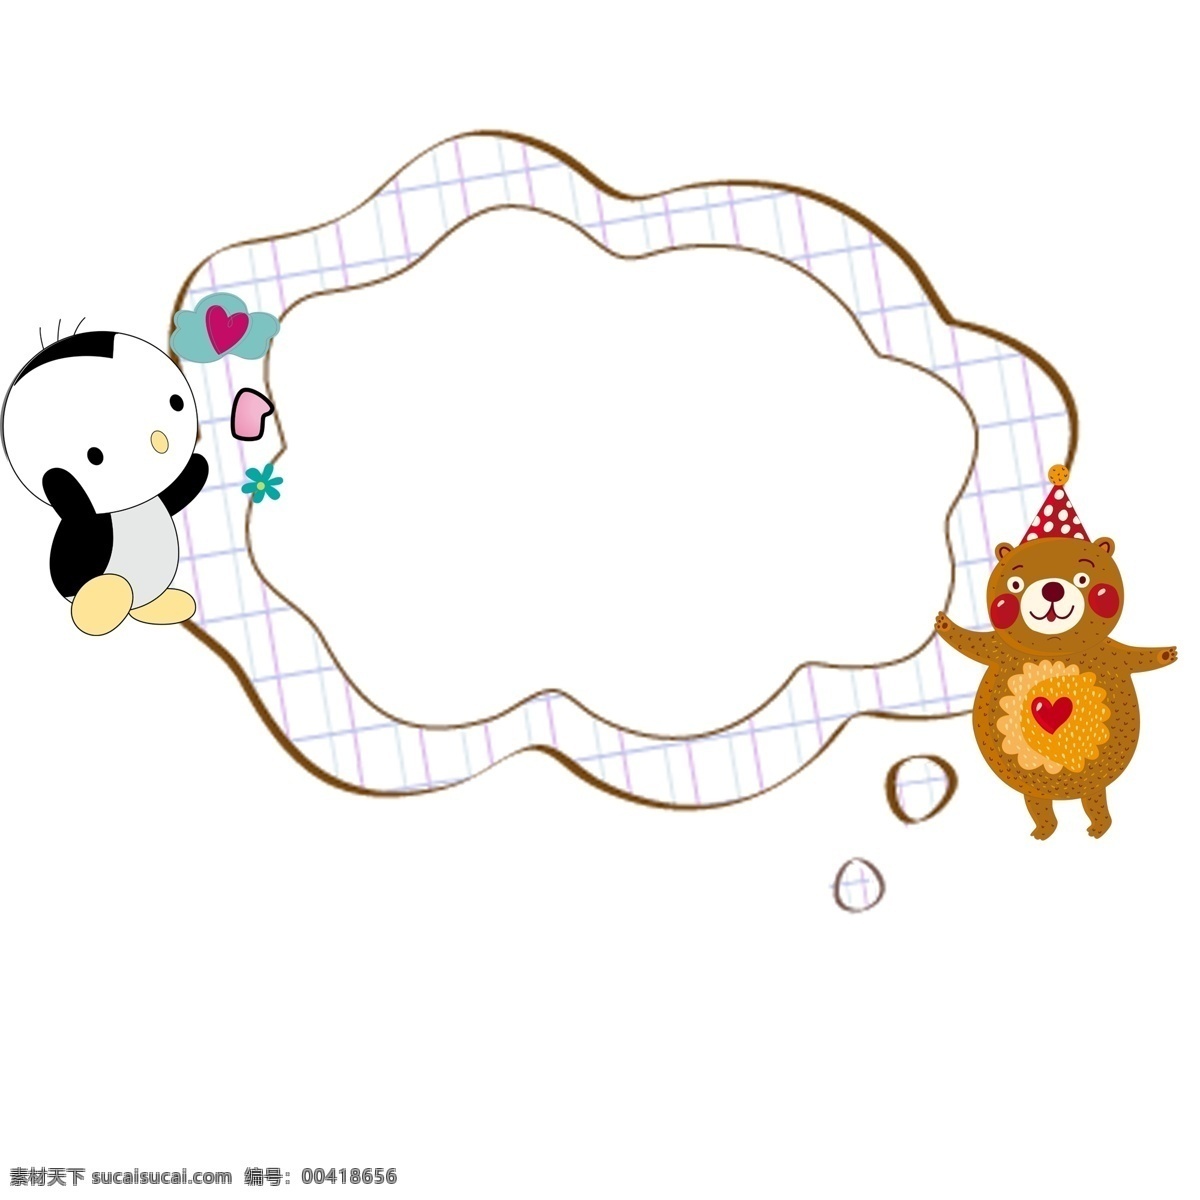 卡通 唯美 边框 元素 儿童 动物 云朵边框 花朵 乐谱 气球 可爱边框 清新 标题框 清新边框 彩色边框